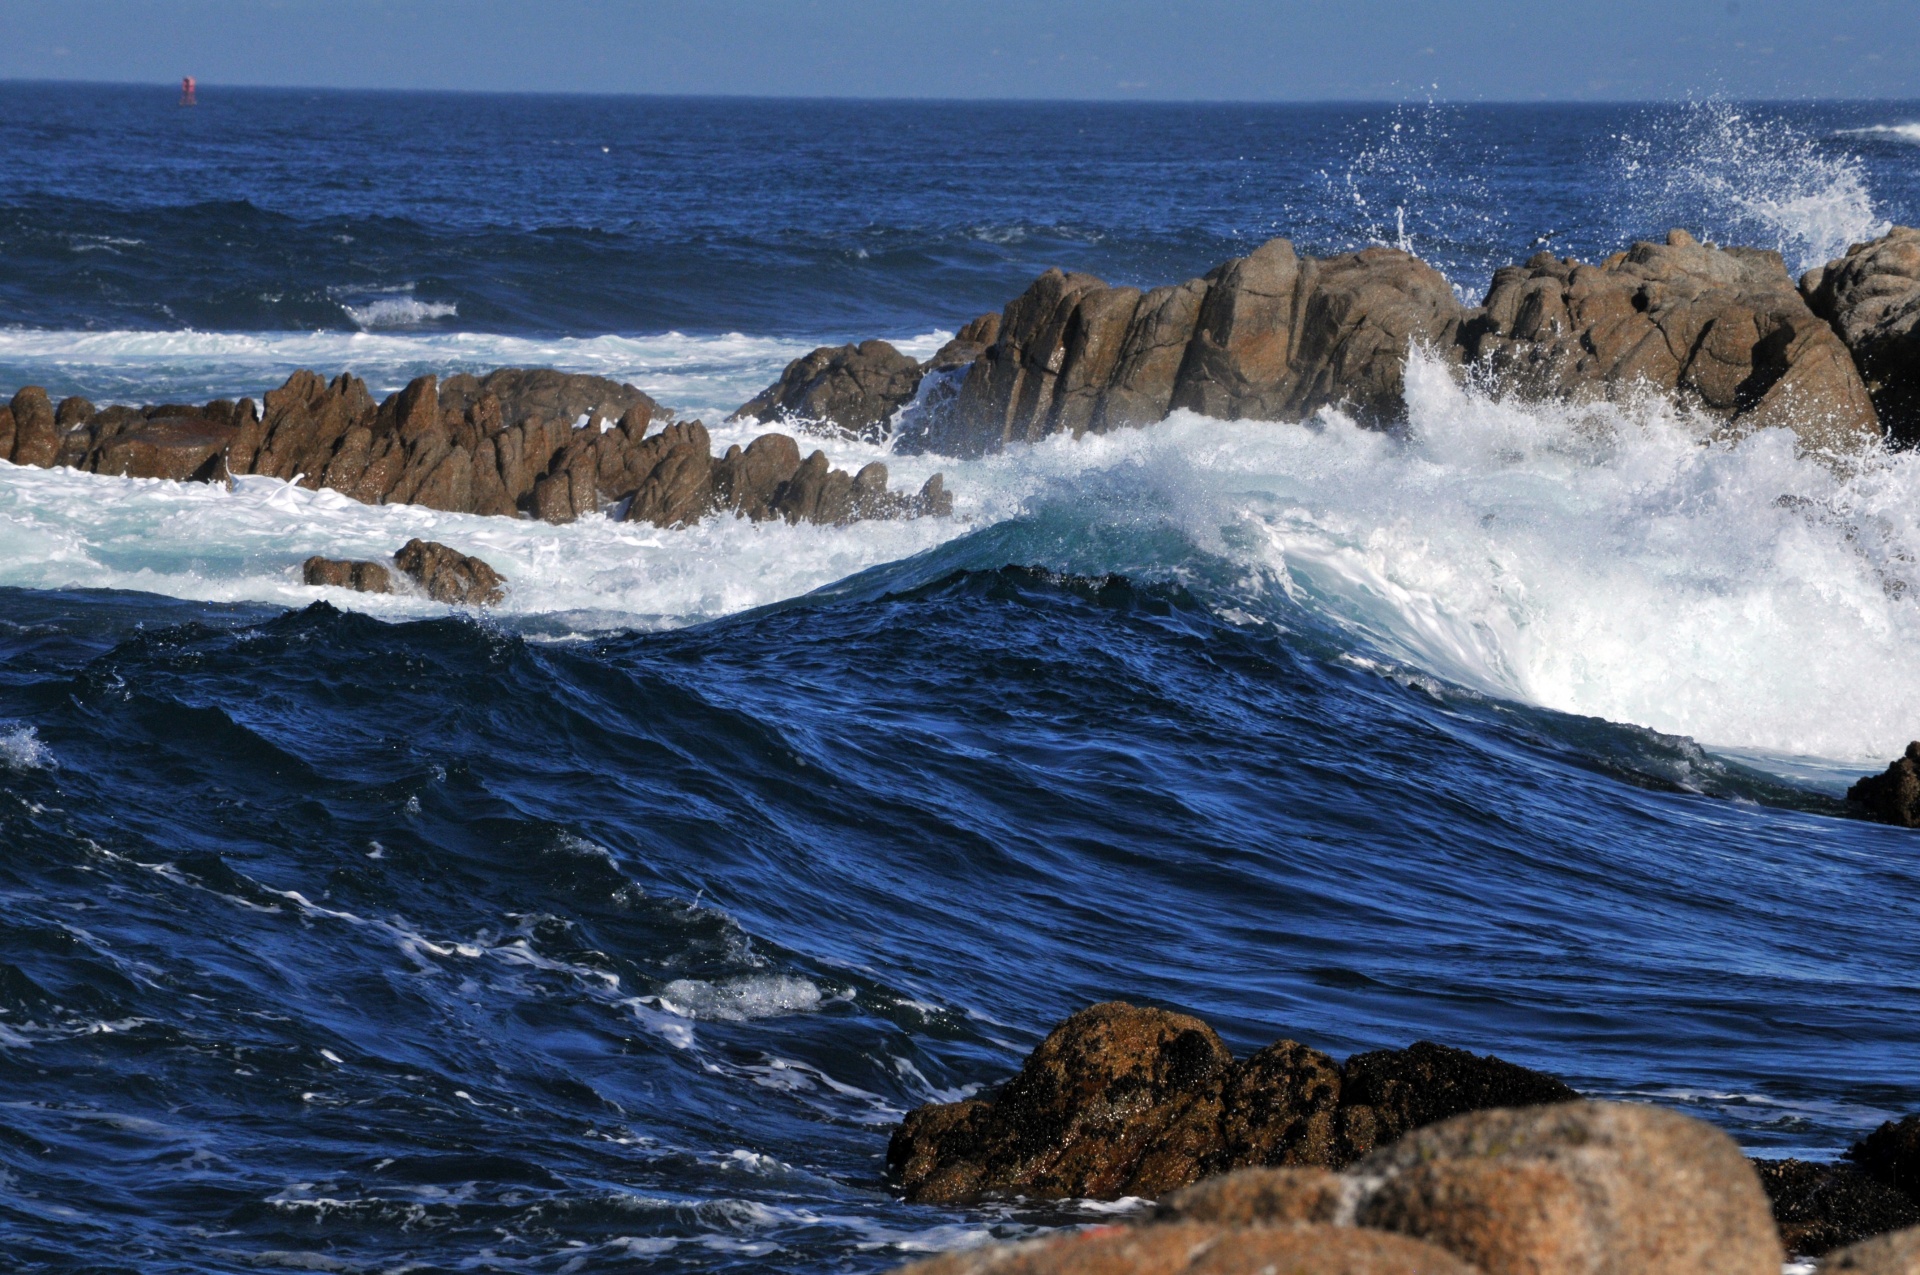 Las olas en la Costa costa rugosa